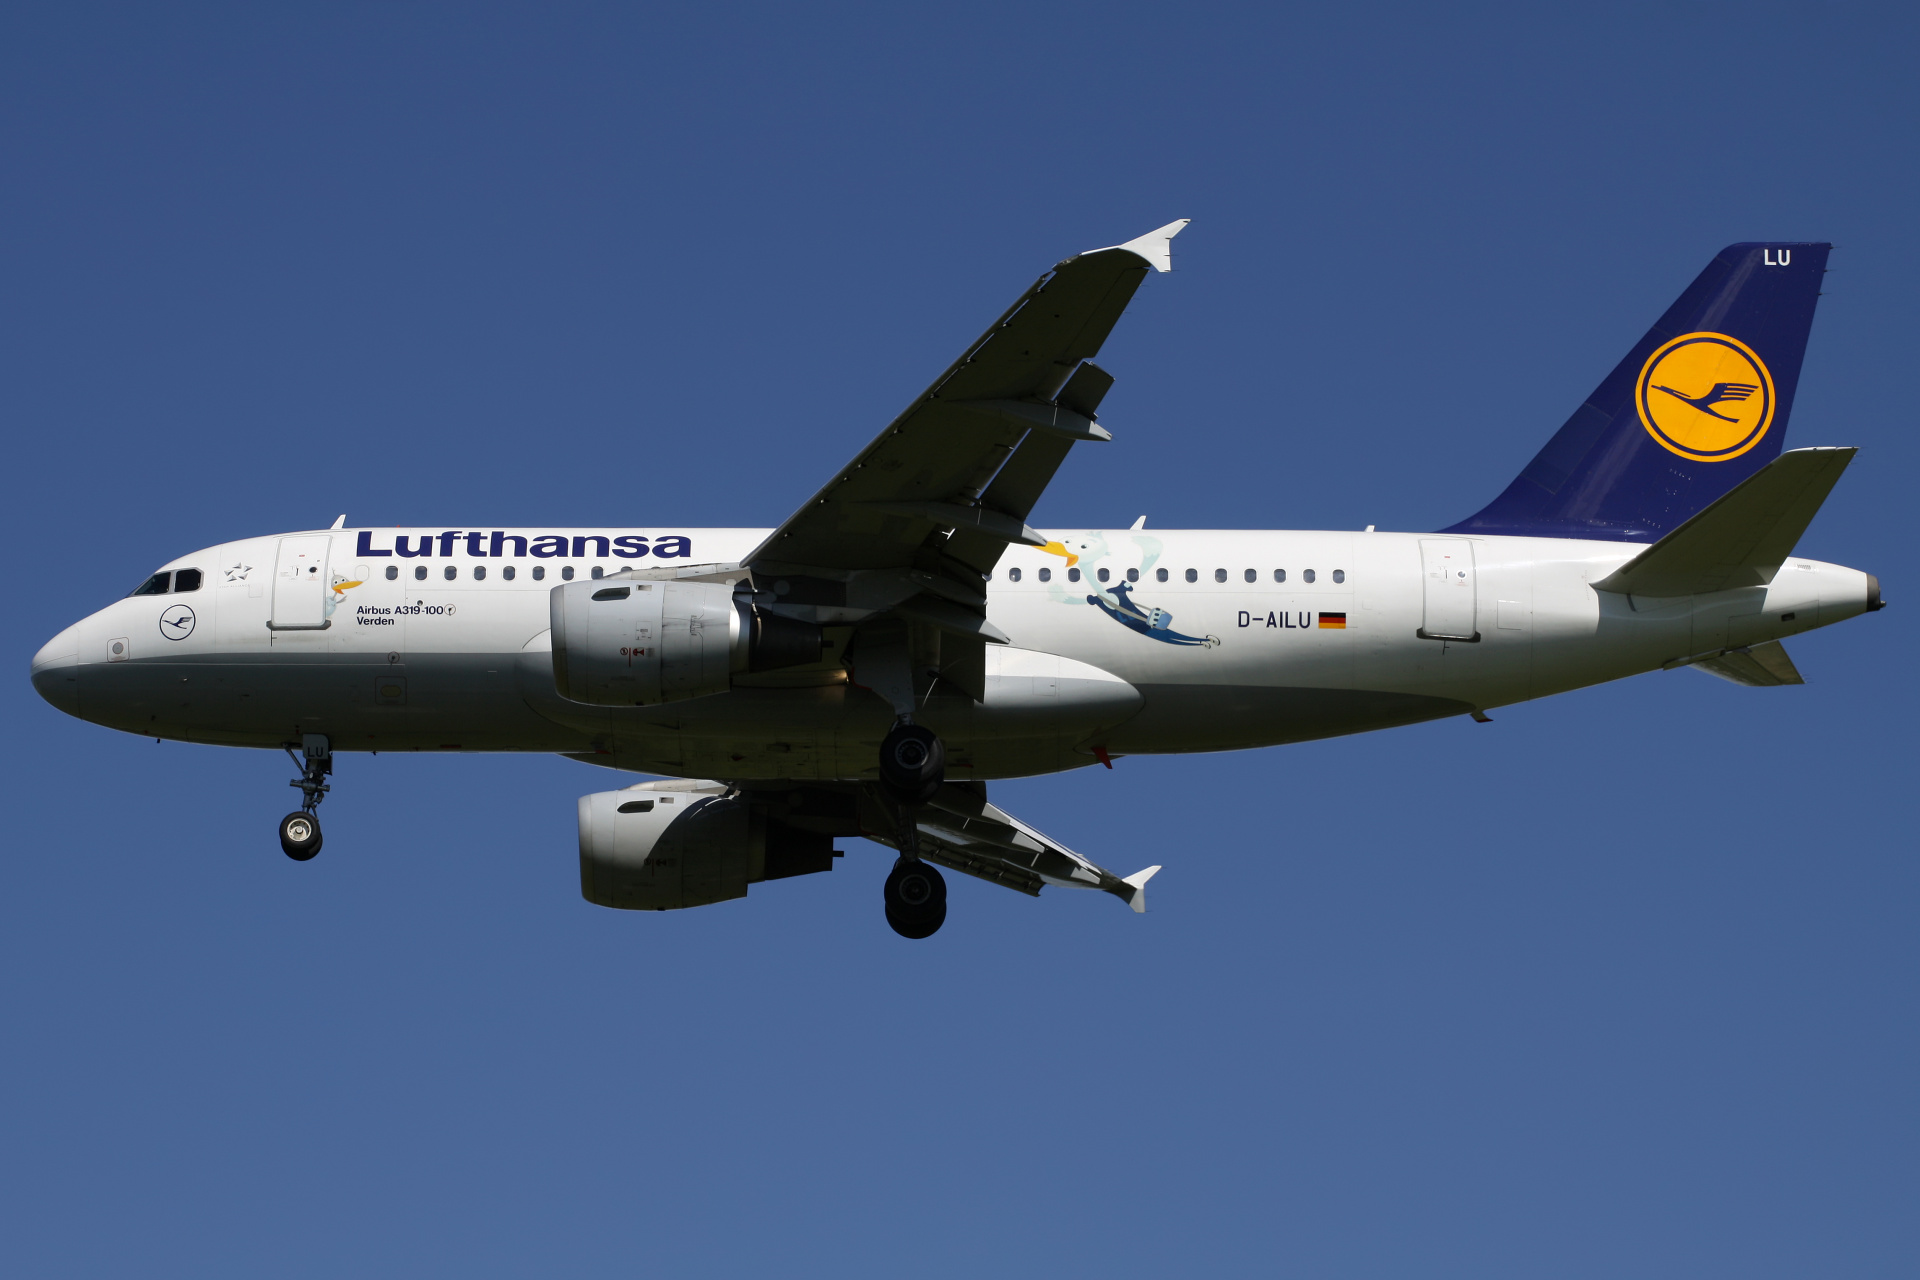 D-AILU (JetFriends livery) (Aircraft » EPWA Spotting » Airbus A319-100 » Lufthansa)